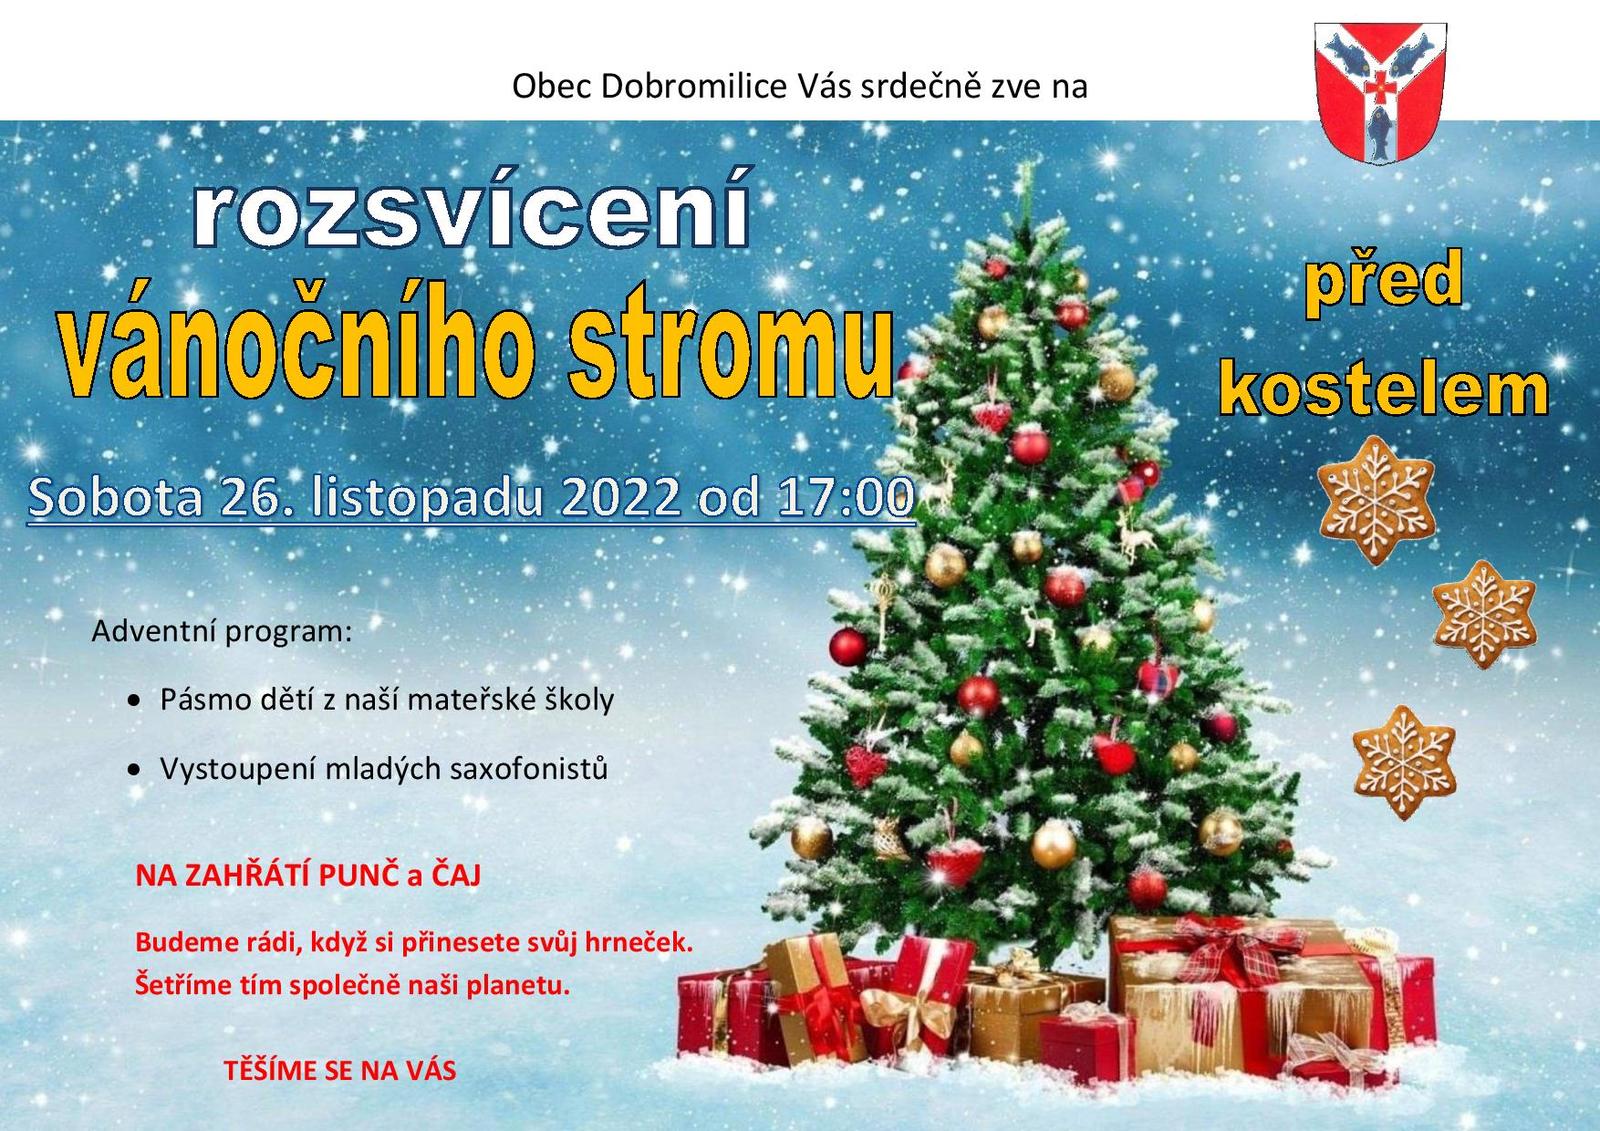 Rozsvícení vánočního stromu 2022_Dobromilice-page-001.jpg